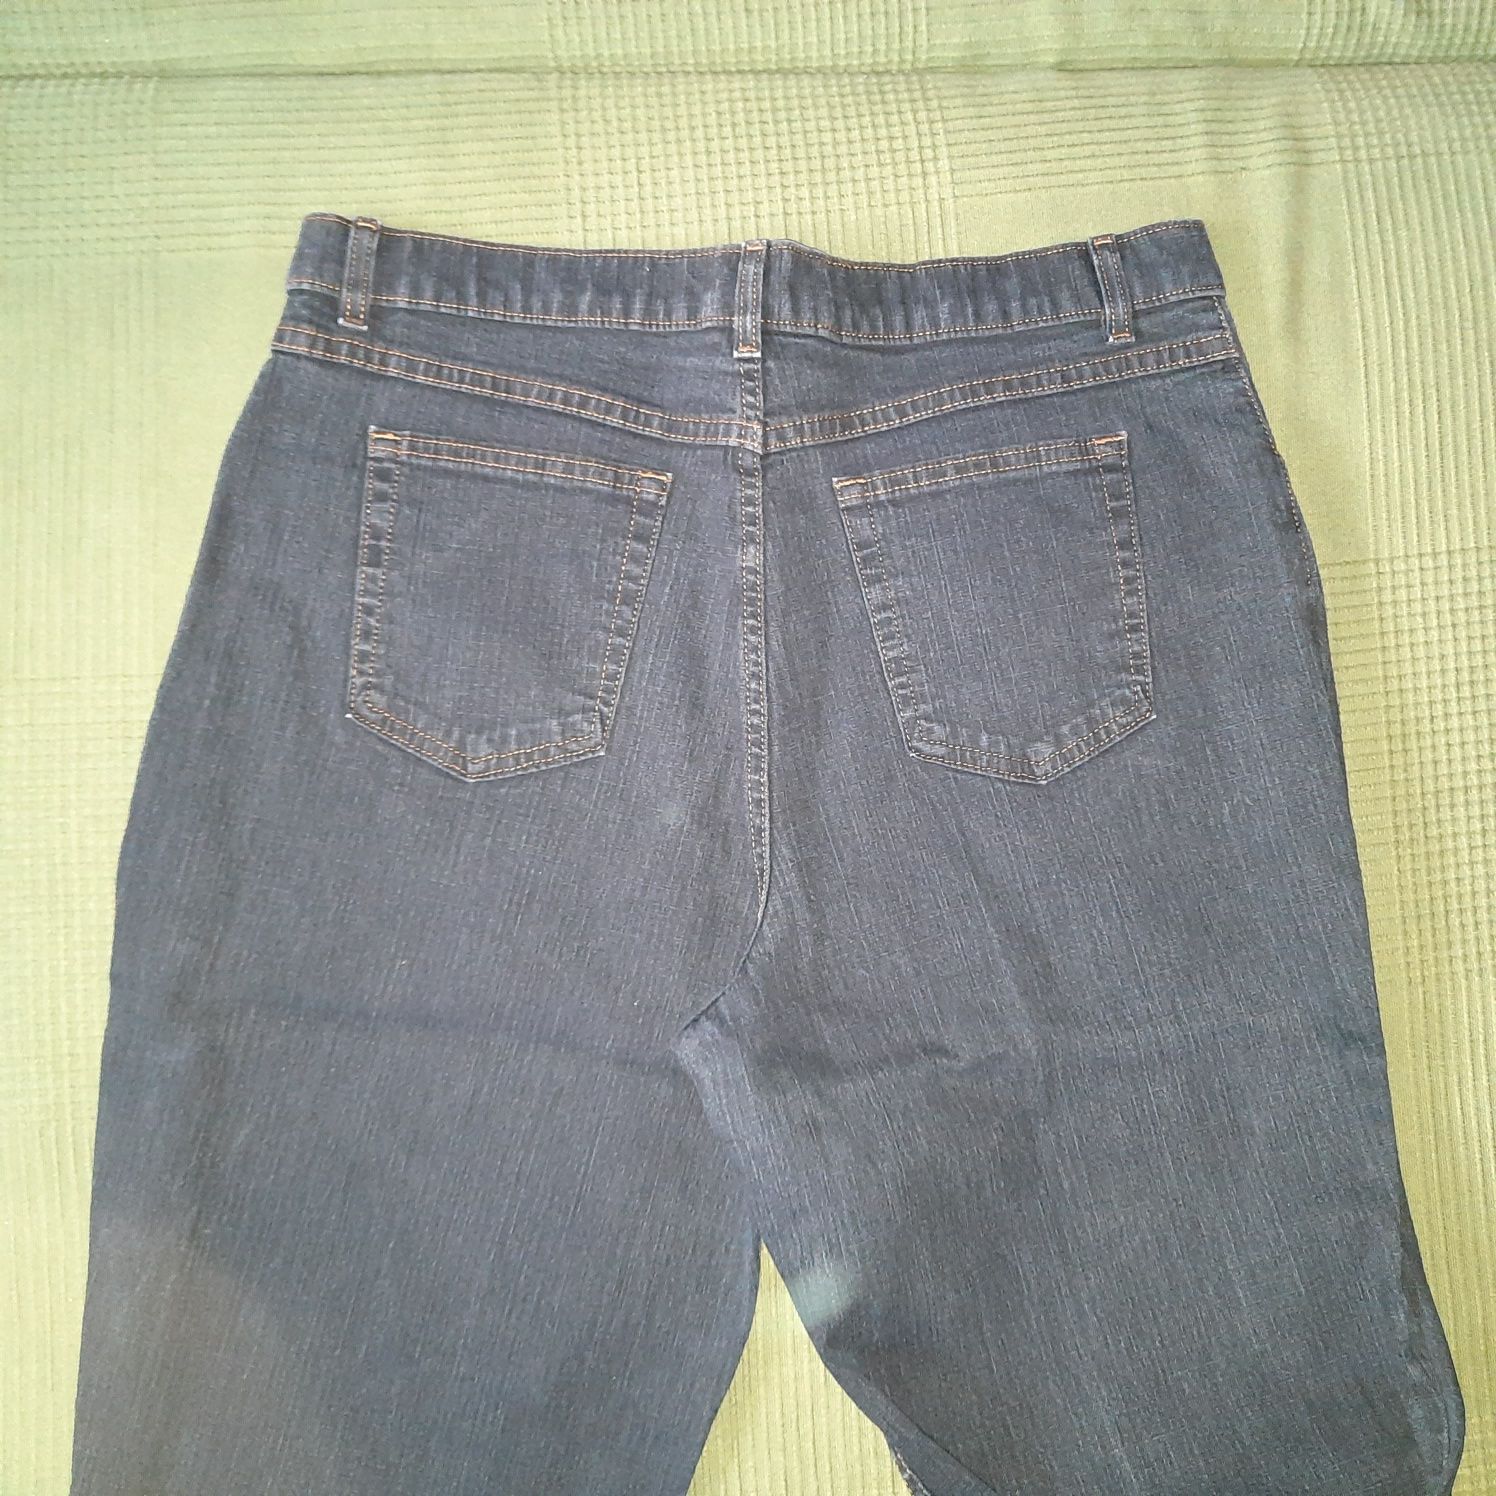 Spodnie męskie jeansy dzinsy granatowe r L